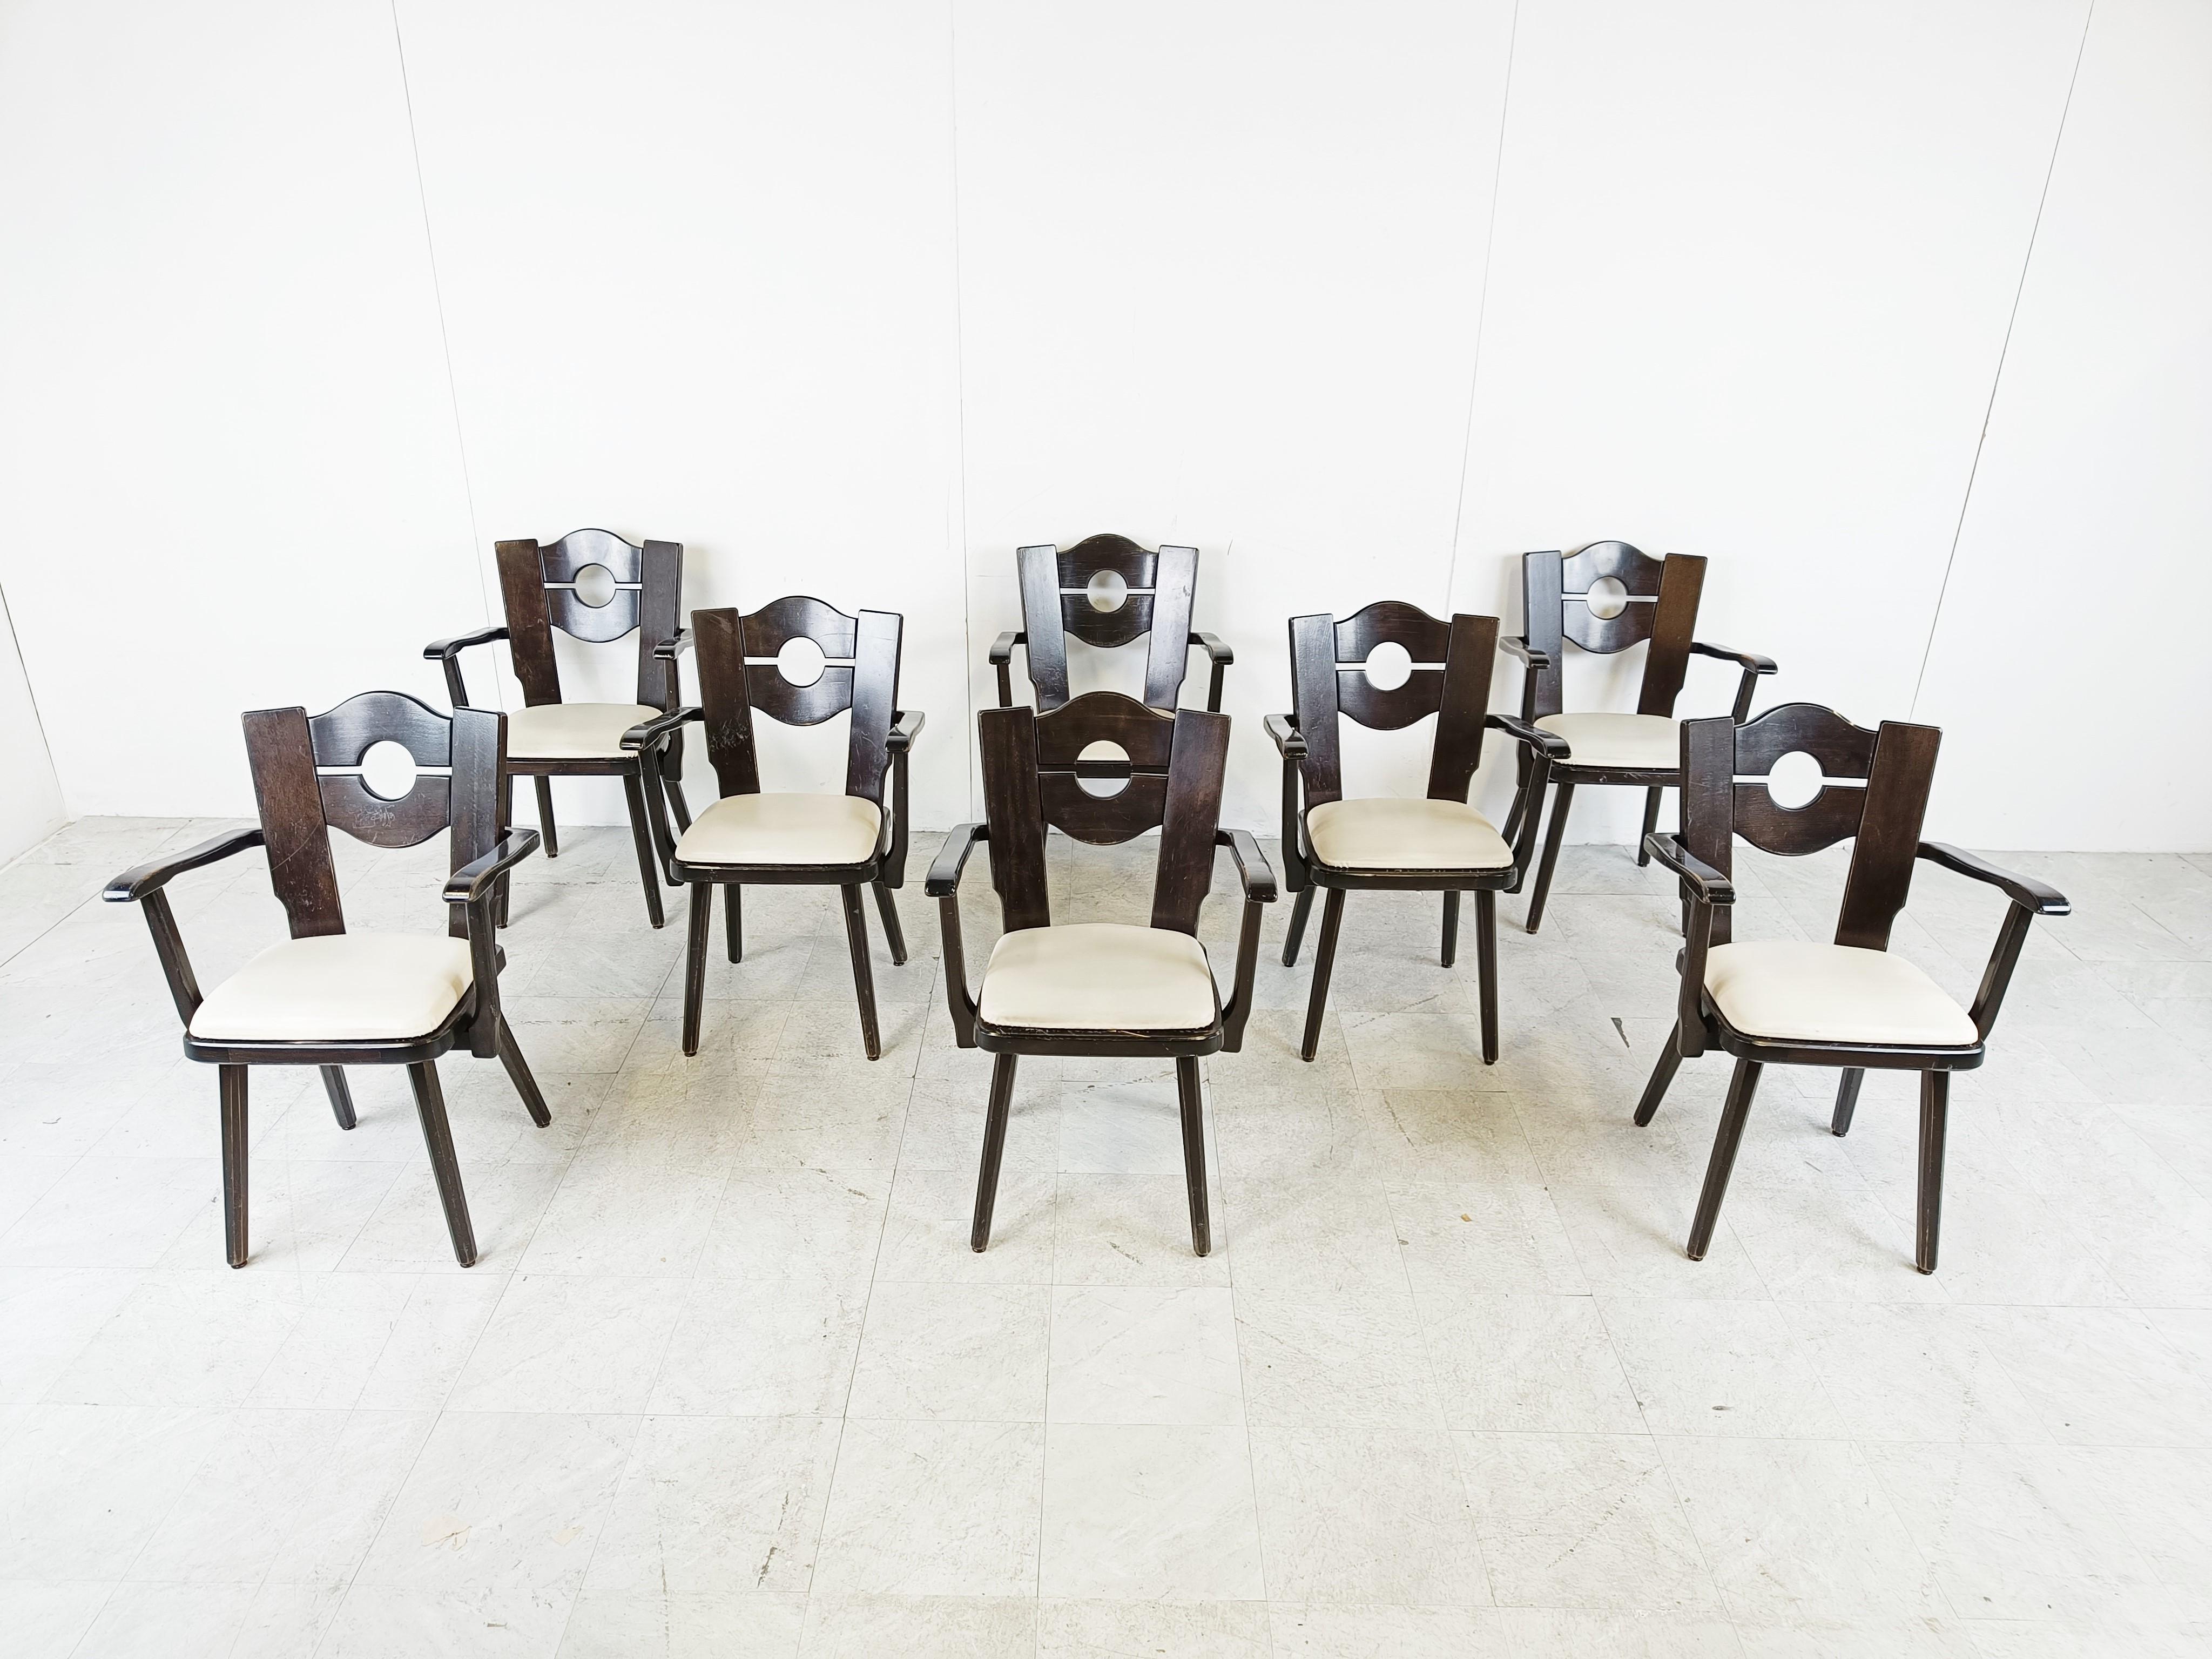 Brutalistische Esszimmerstühle aus ebonisiertem Holz mit Armlehnen.

Die Stühle haben weiße Kunstledersitze.

Guter Zustand mit normalen altersbedingten Gebrauchsspuren.

1960er Jahre - Deutschland

Abmessungen:

Höhe: